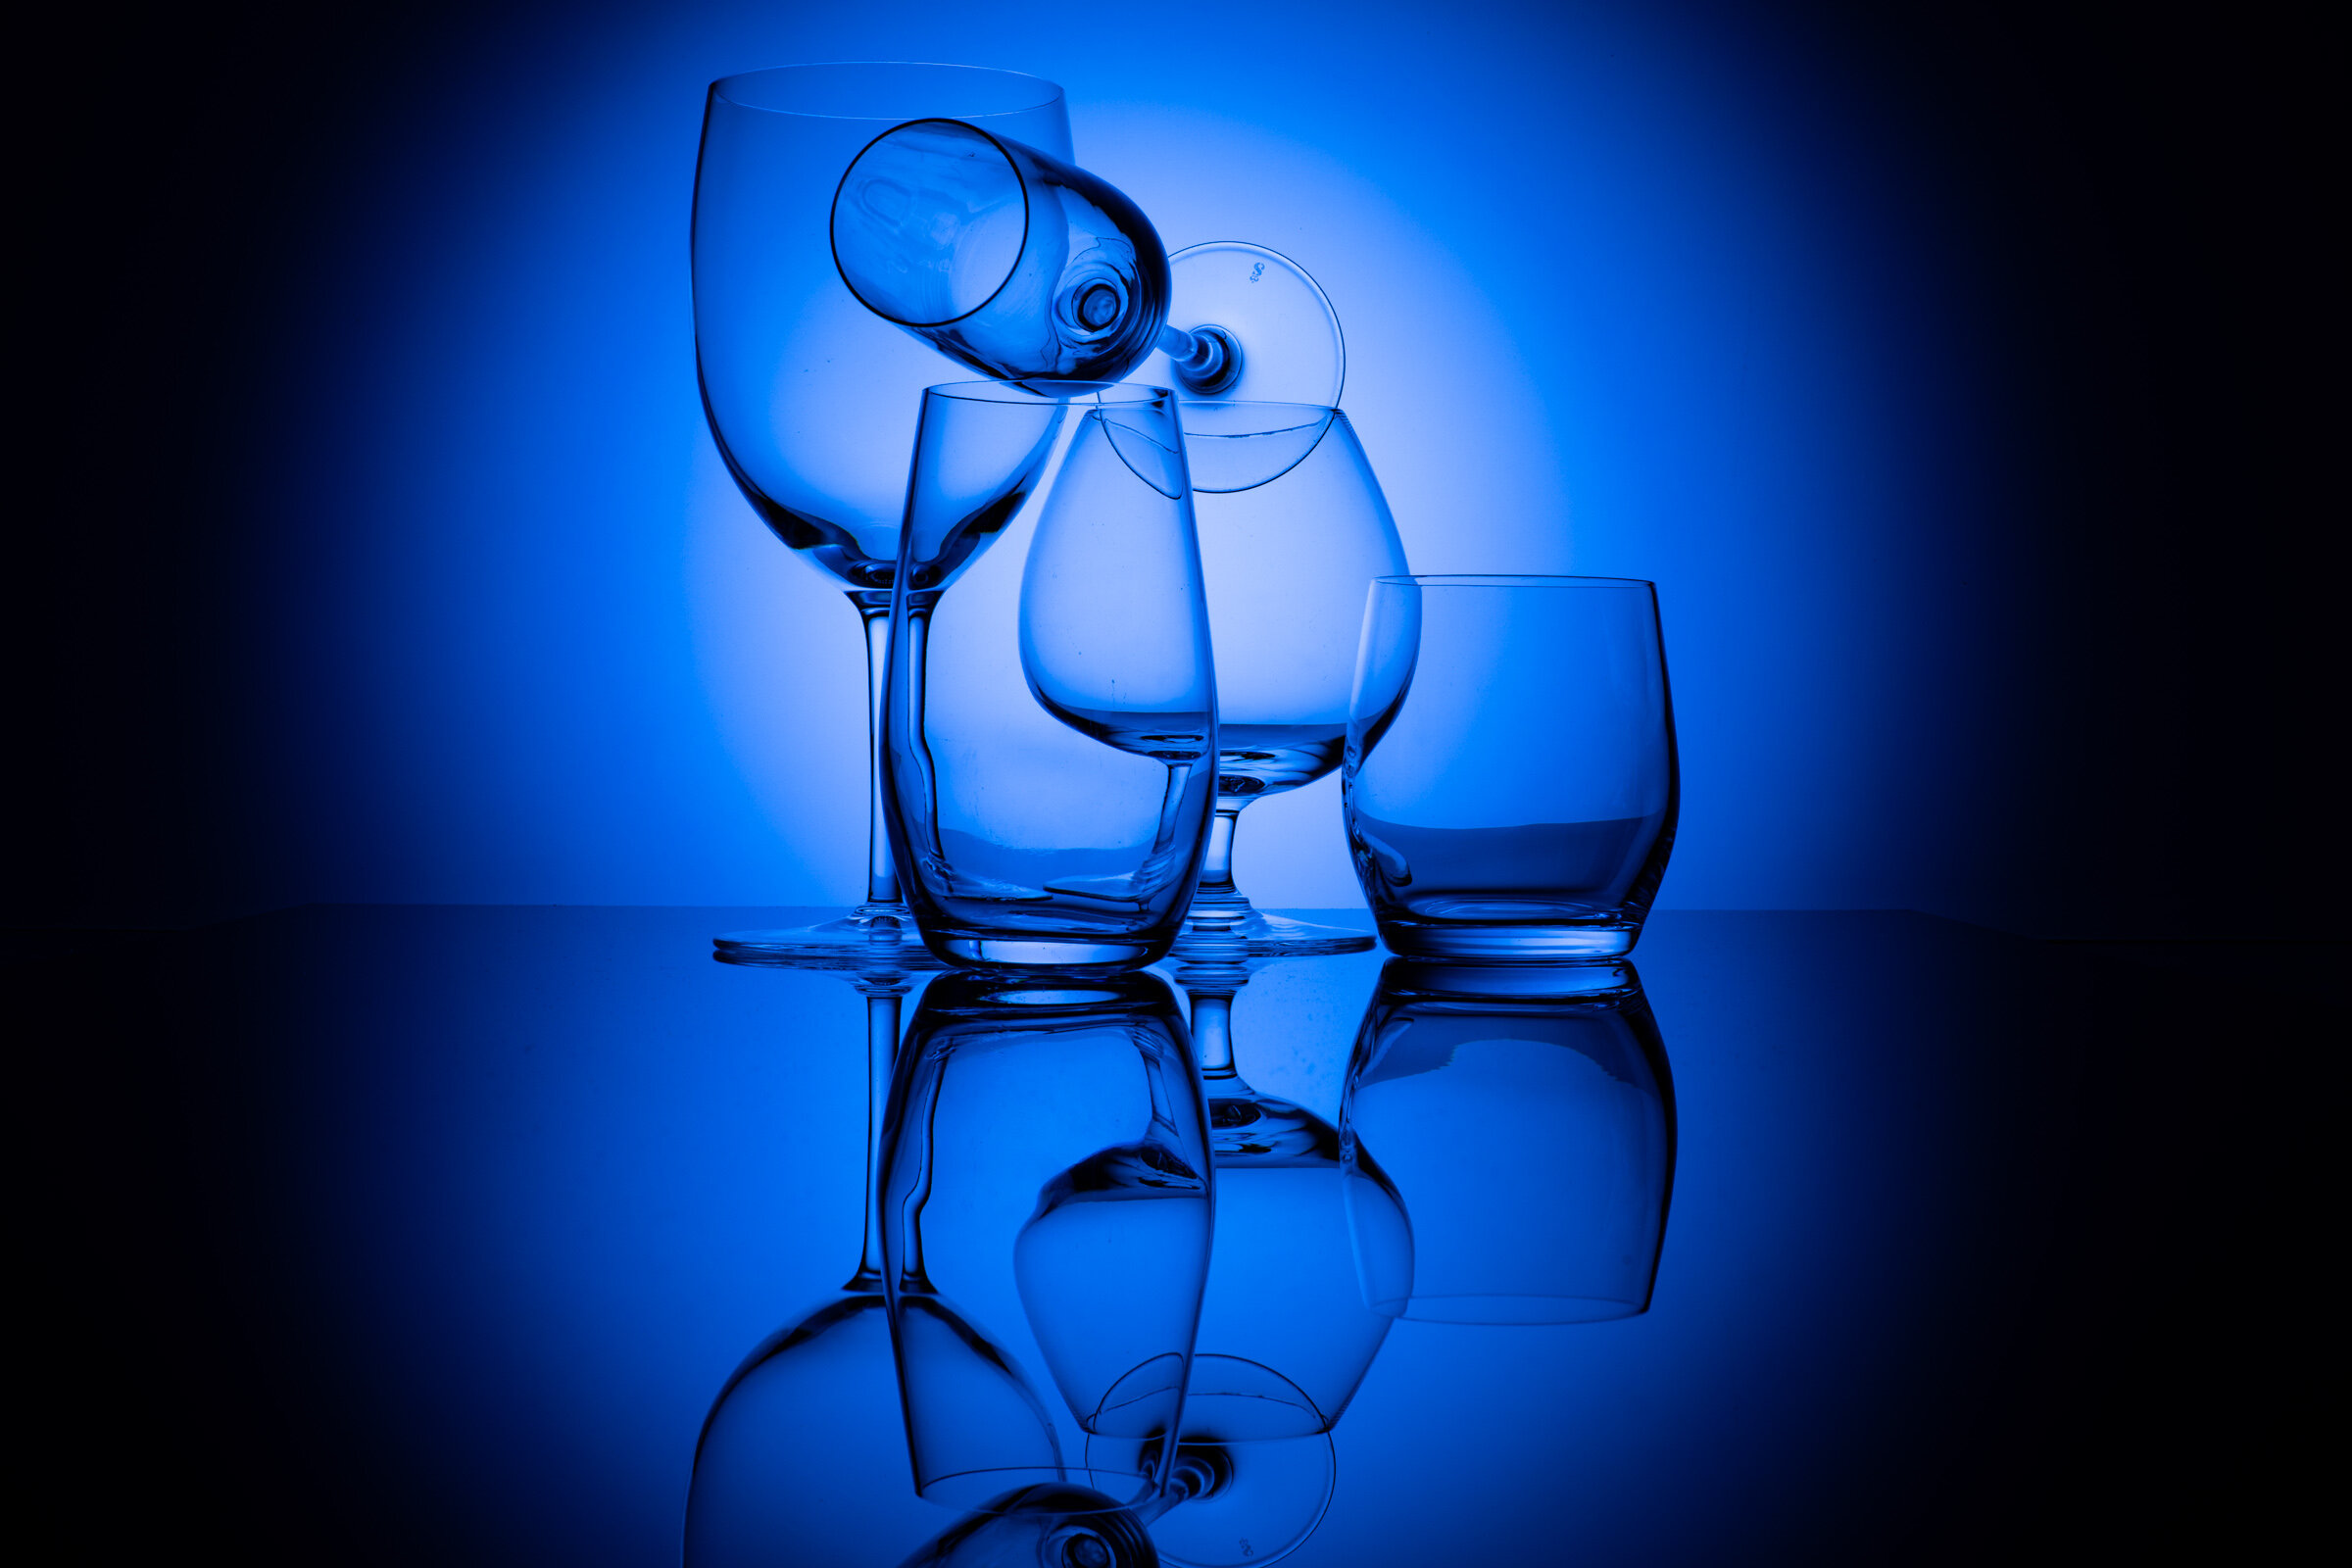 GLASSES IN BLUE